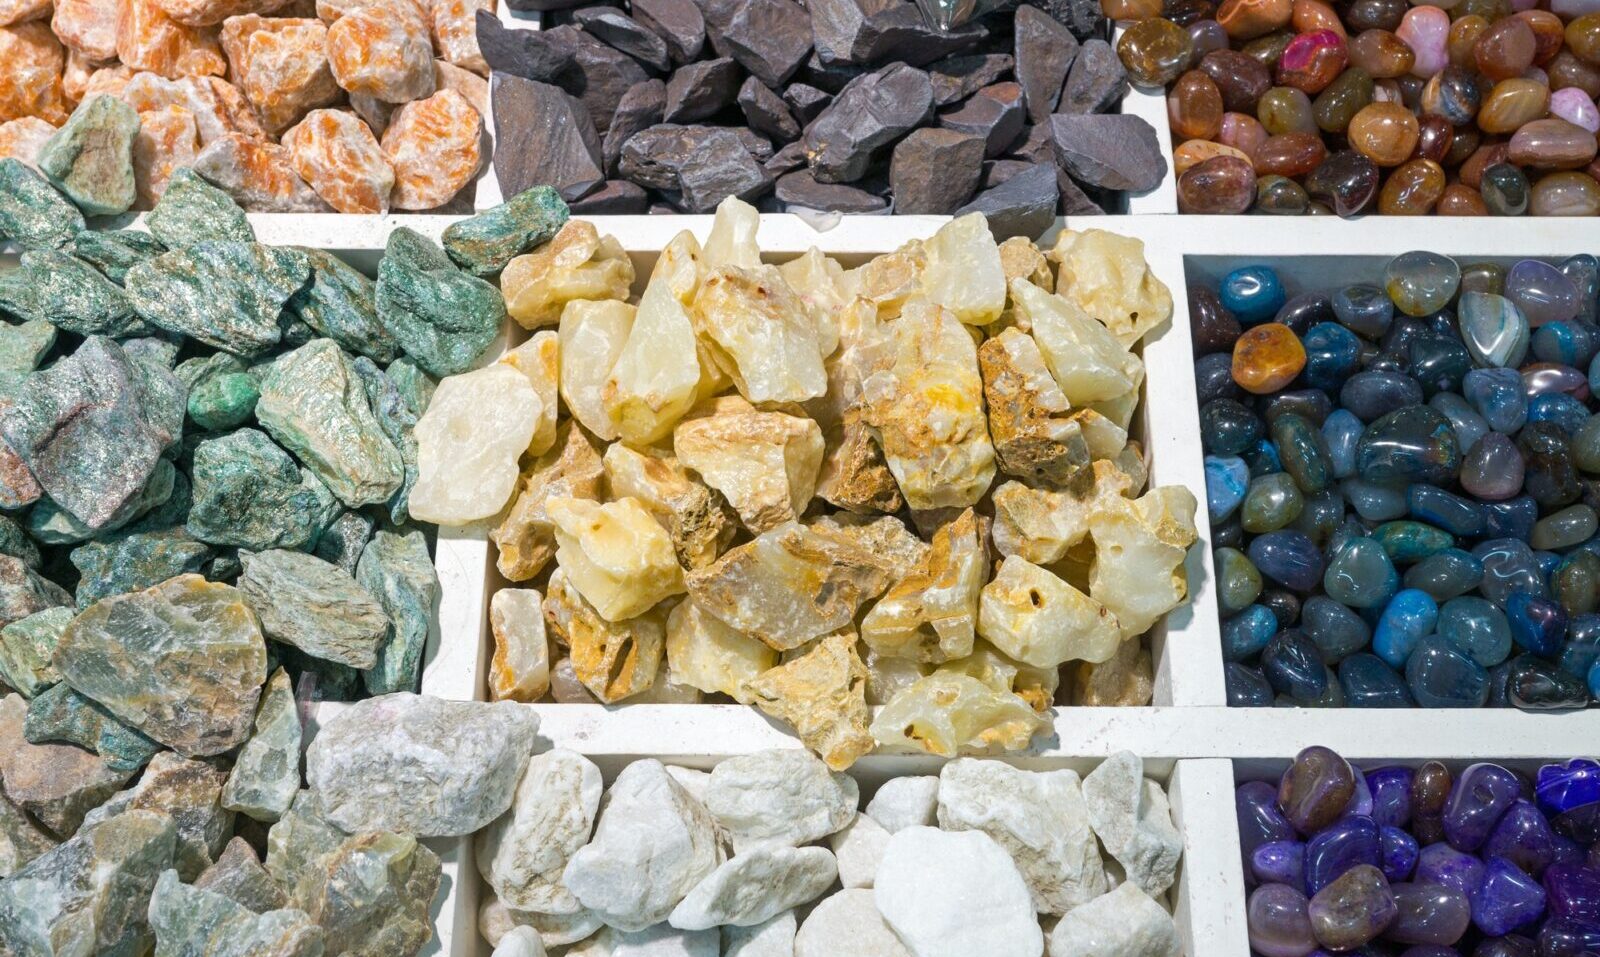 Colourful semi-precious stones